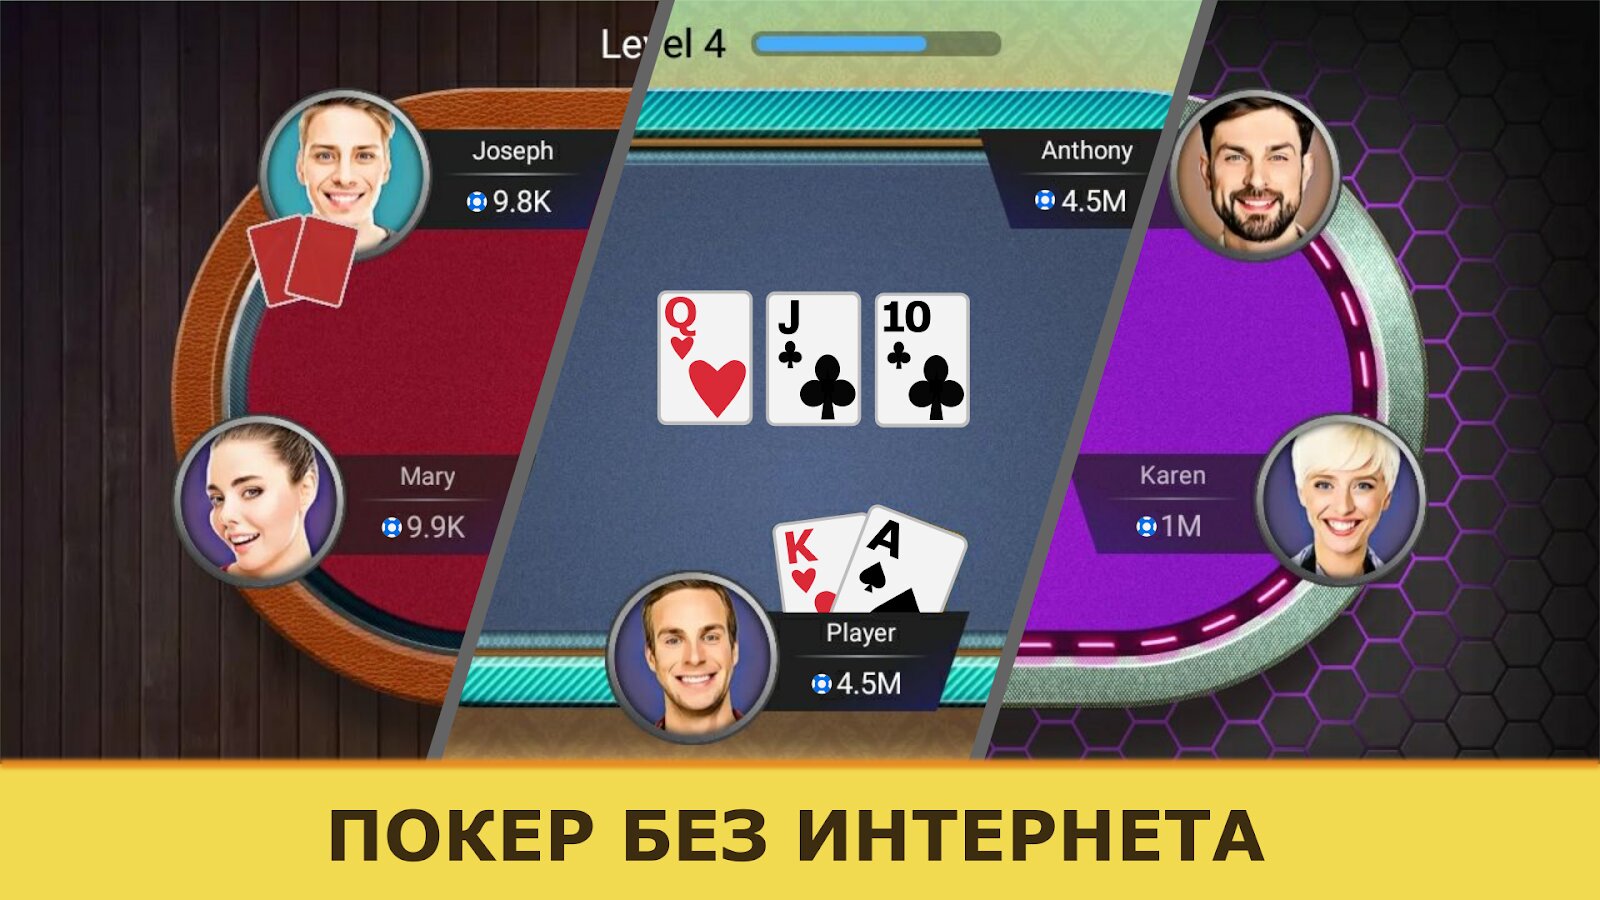 Скачать покер на андроид не онлайн на русском языке играть онлайн бесплатно без регистрации и смс в игровые автоматы